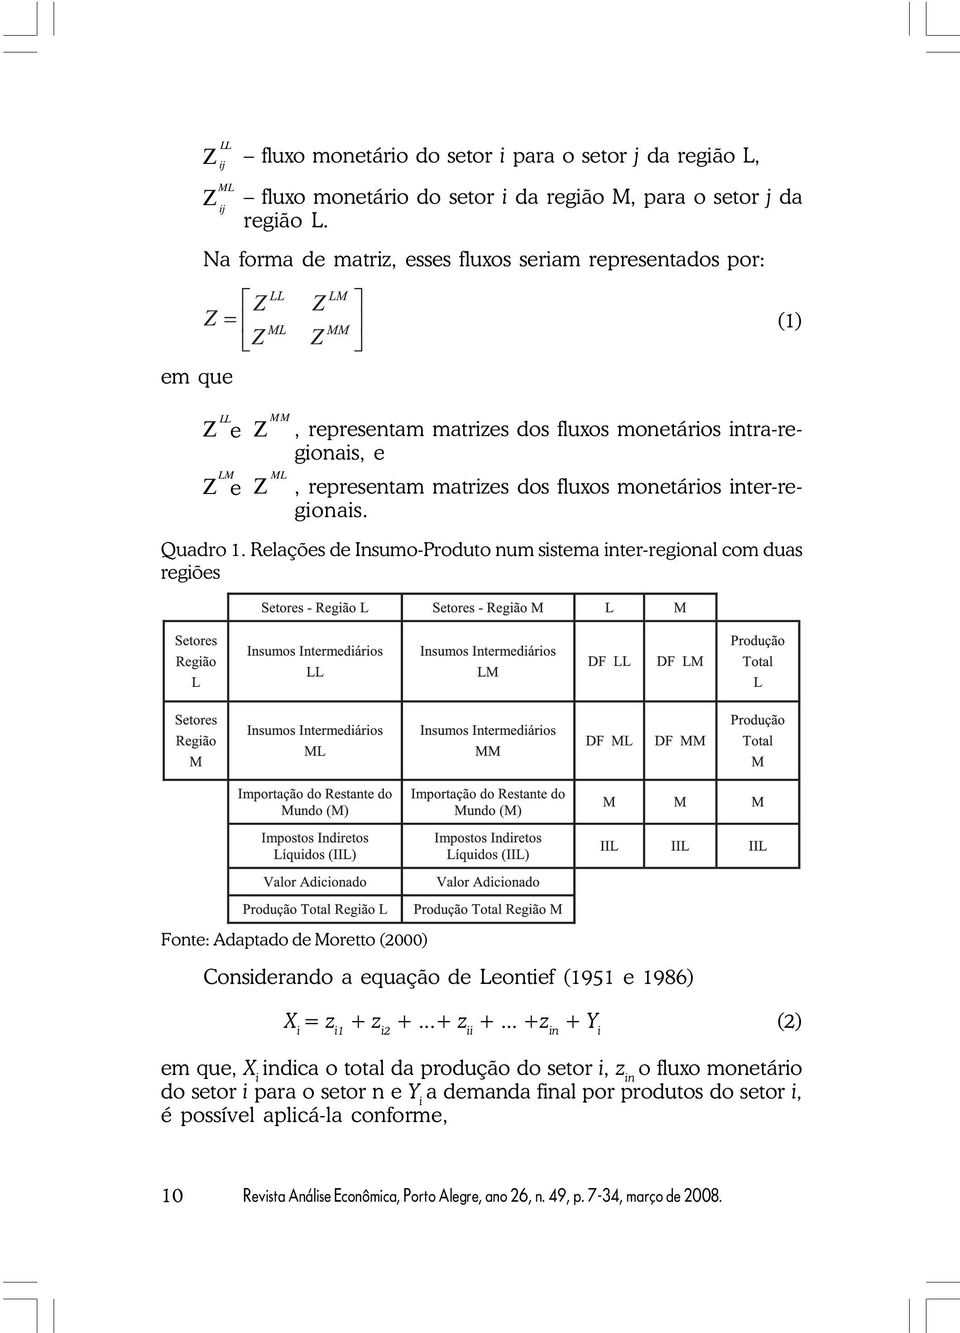 inte-egionais. Quado 1. Relações de Insumo-Poduto num sistema inte-egional com duas egiões Fonte: Adaptado de Moetto (2000) Consideando a equação de Leontief (1951 e 1986) X i = z i1 + z i2 +.